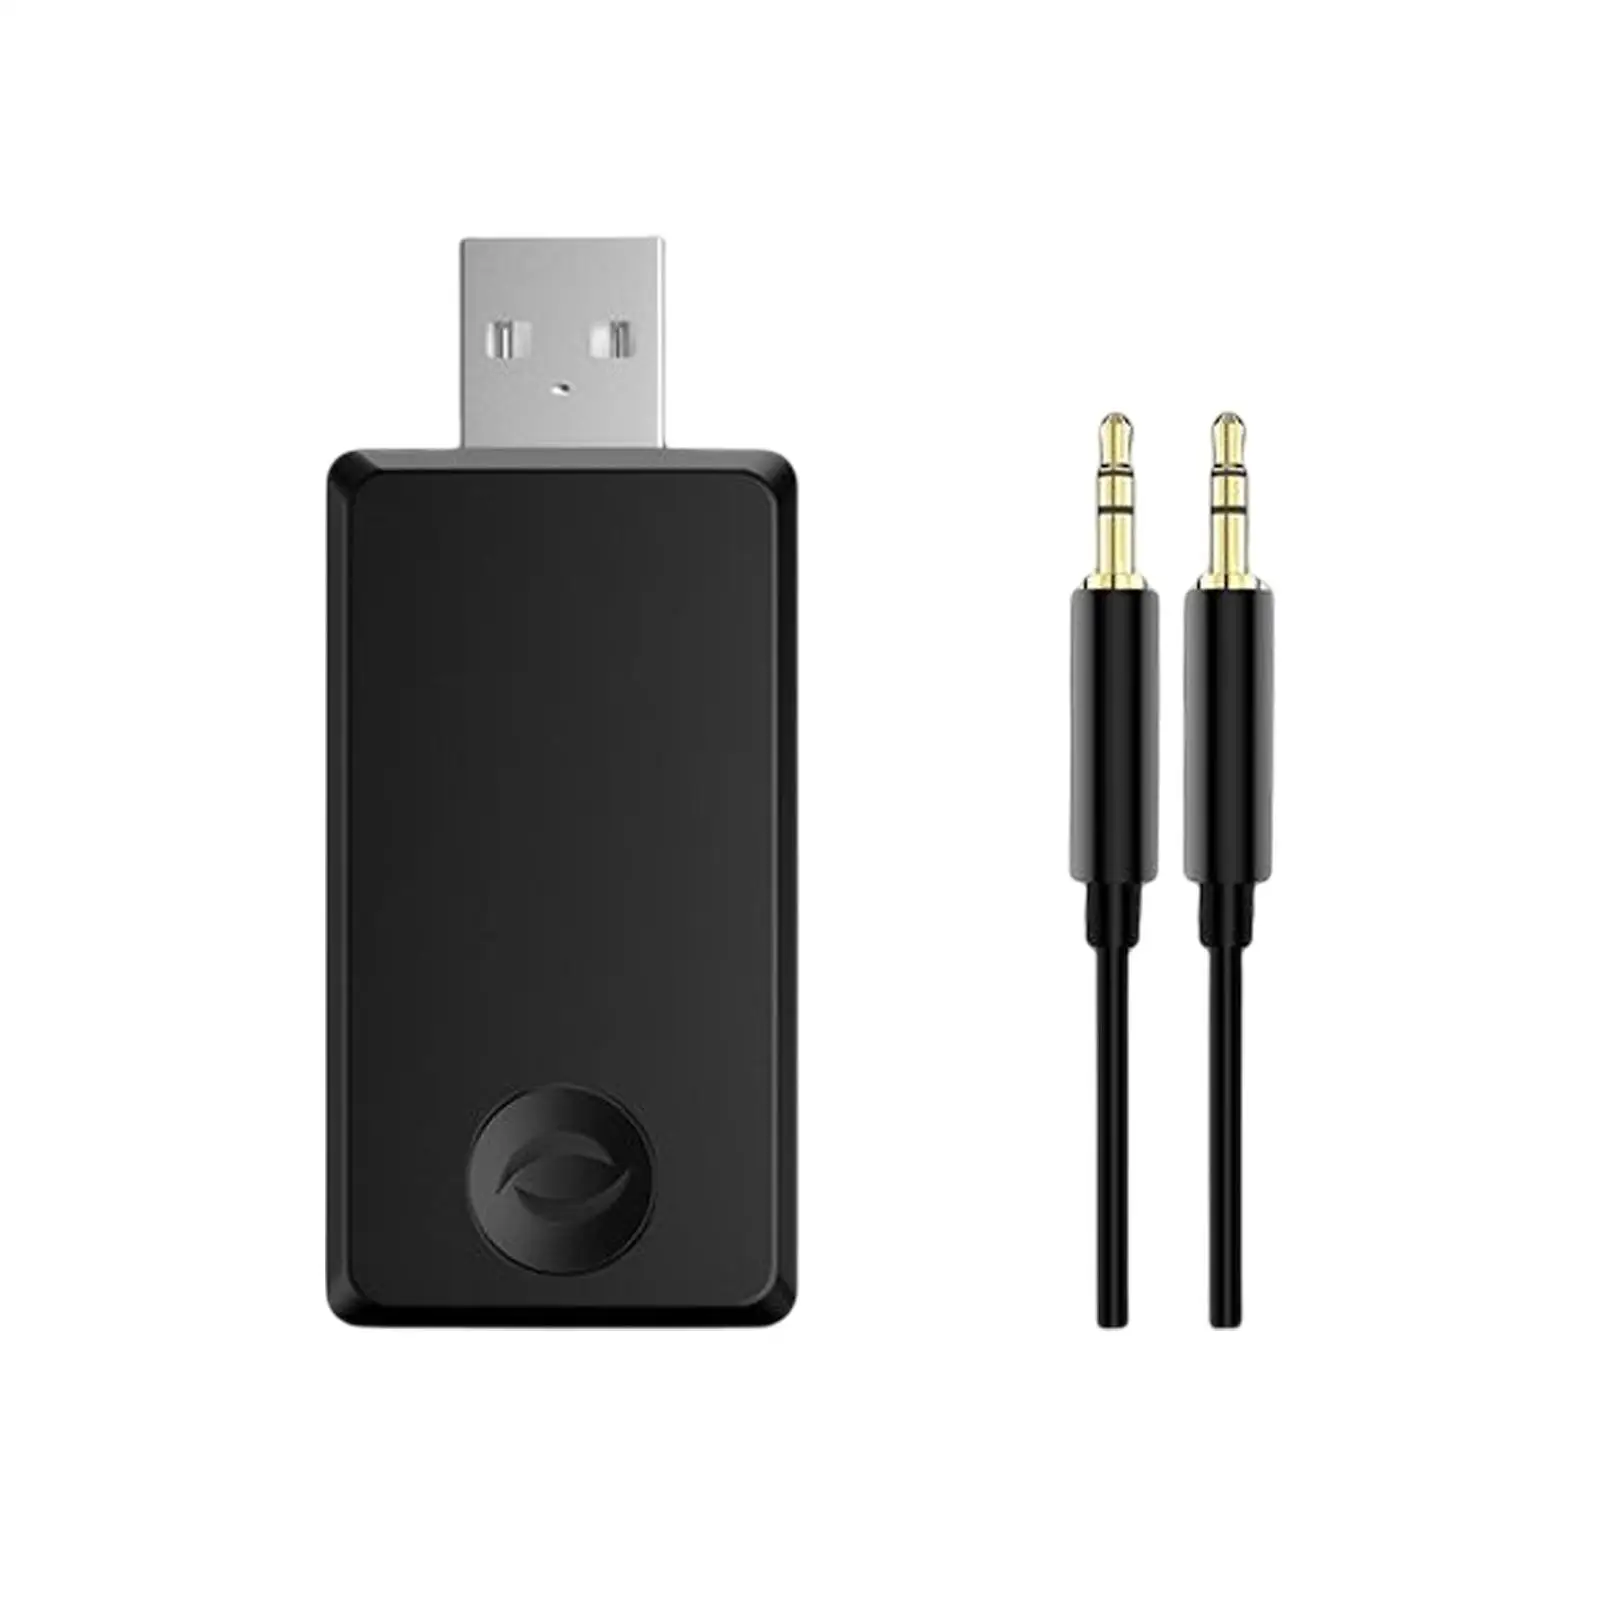 USB Bluetooth, USB & AUX 3.5mm AUX Audio Adapter for Desktop Computer